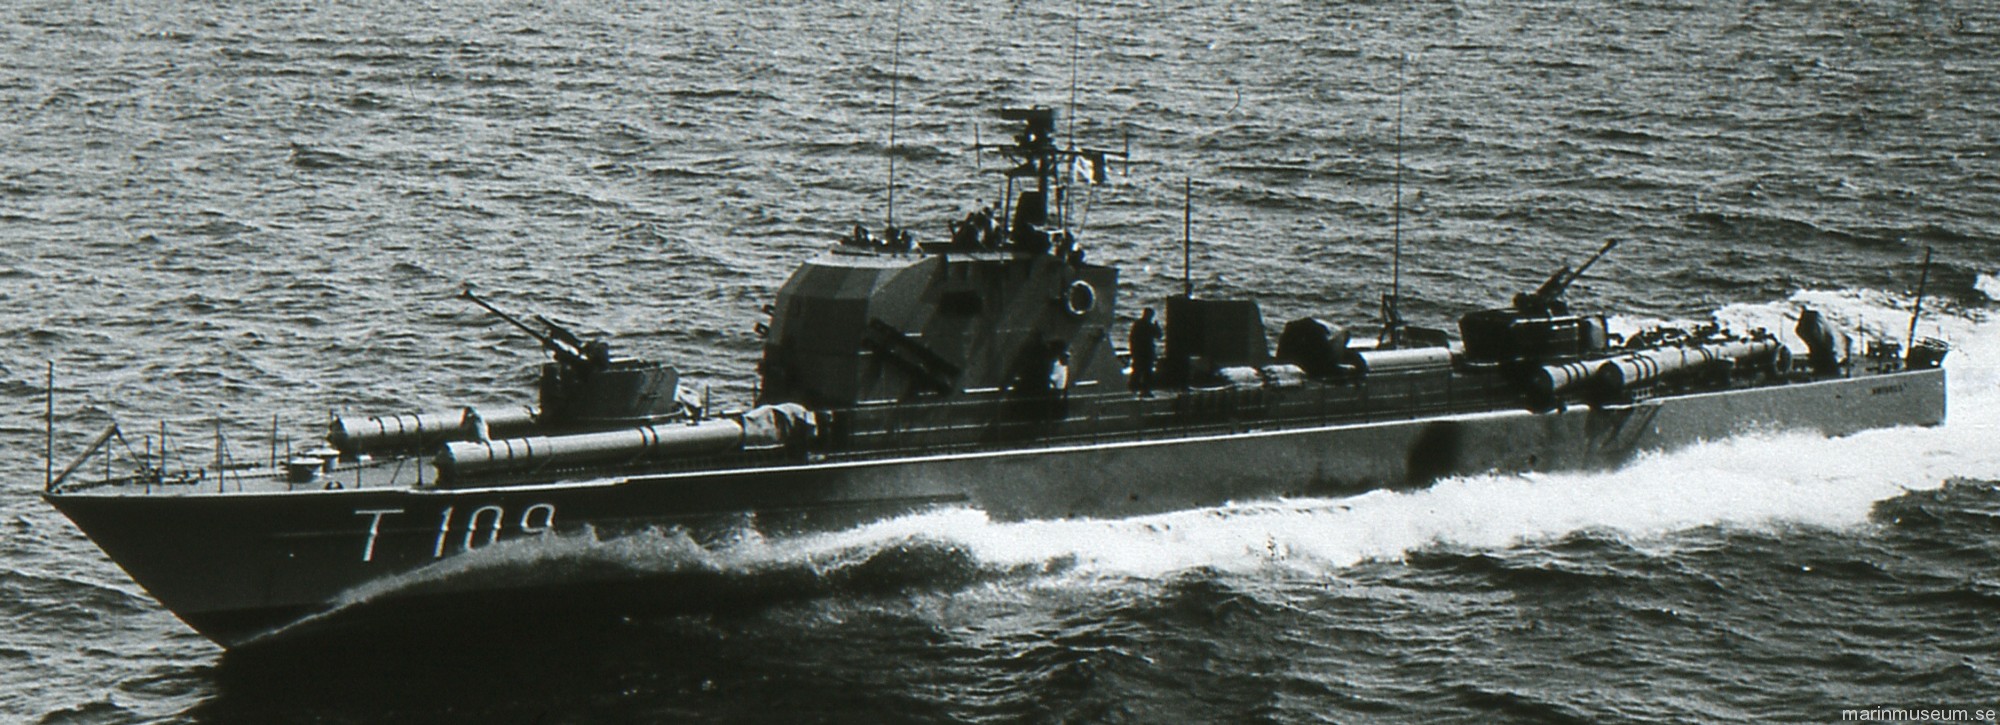 t109 antares hms hswms plejad class fast attack craft torpedo boat vessel swedish navy svenska marinen 03